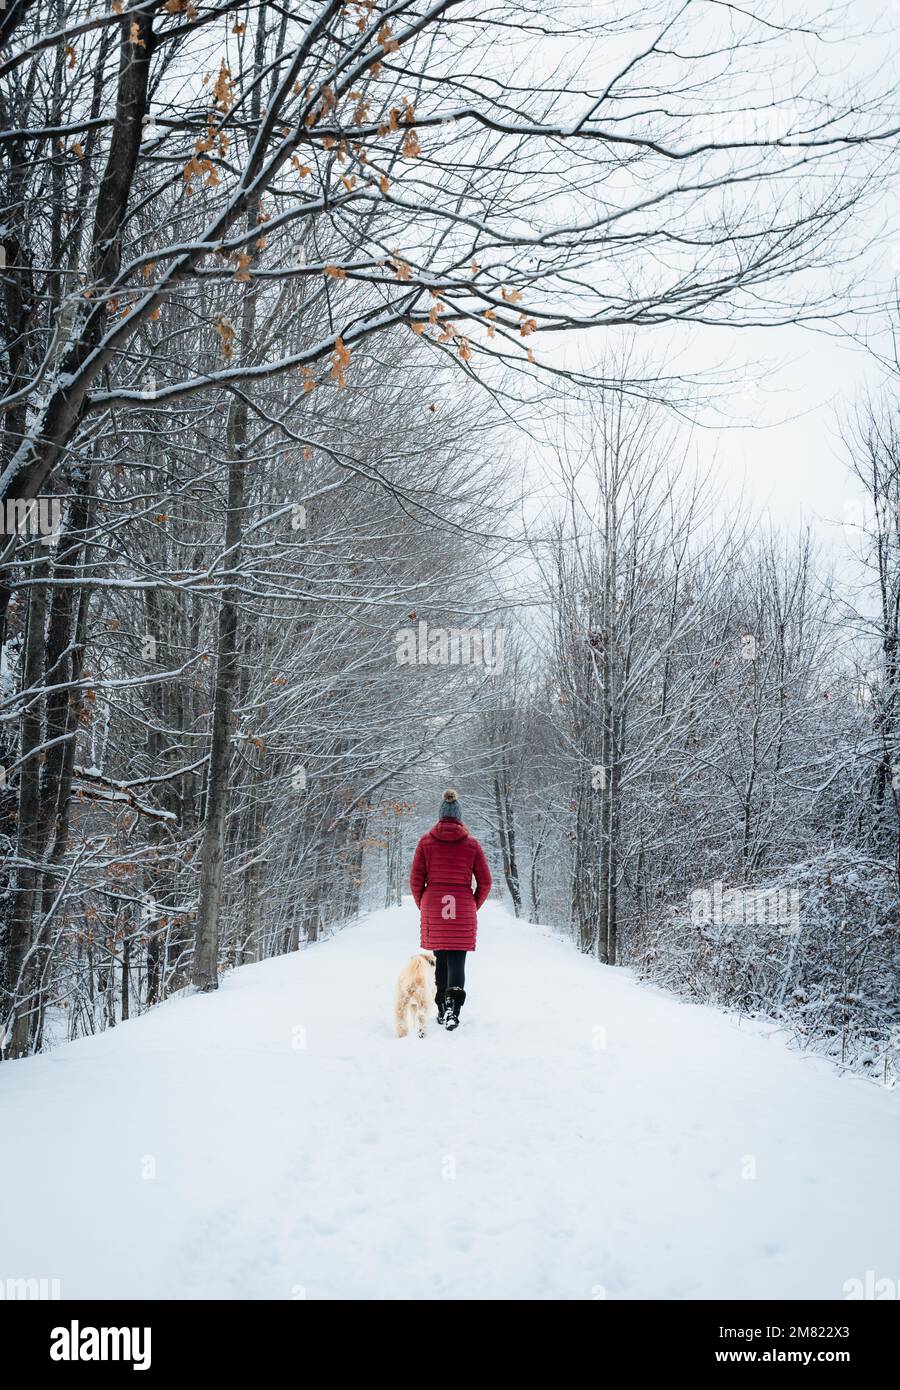 Eine Frau in rotem Mantel, die im Winter mit einem Hund auf einem schneebedeckten Waldweg spaziert. Stockfoto